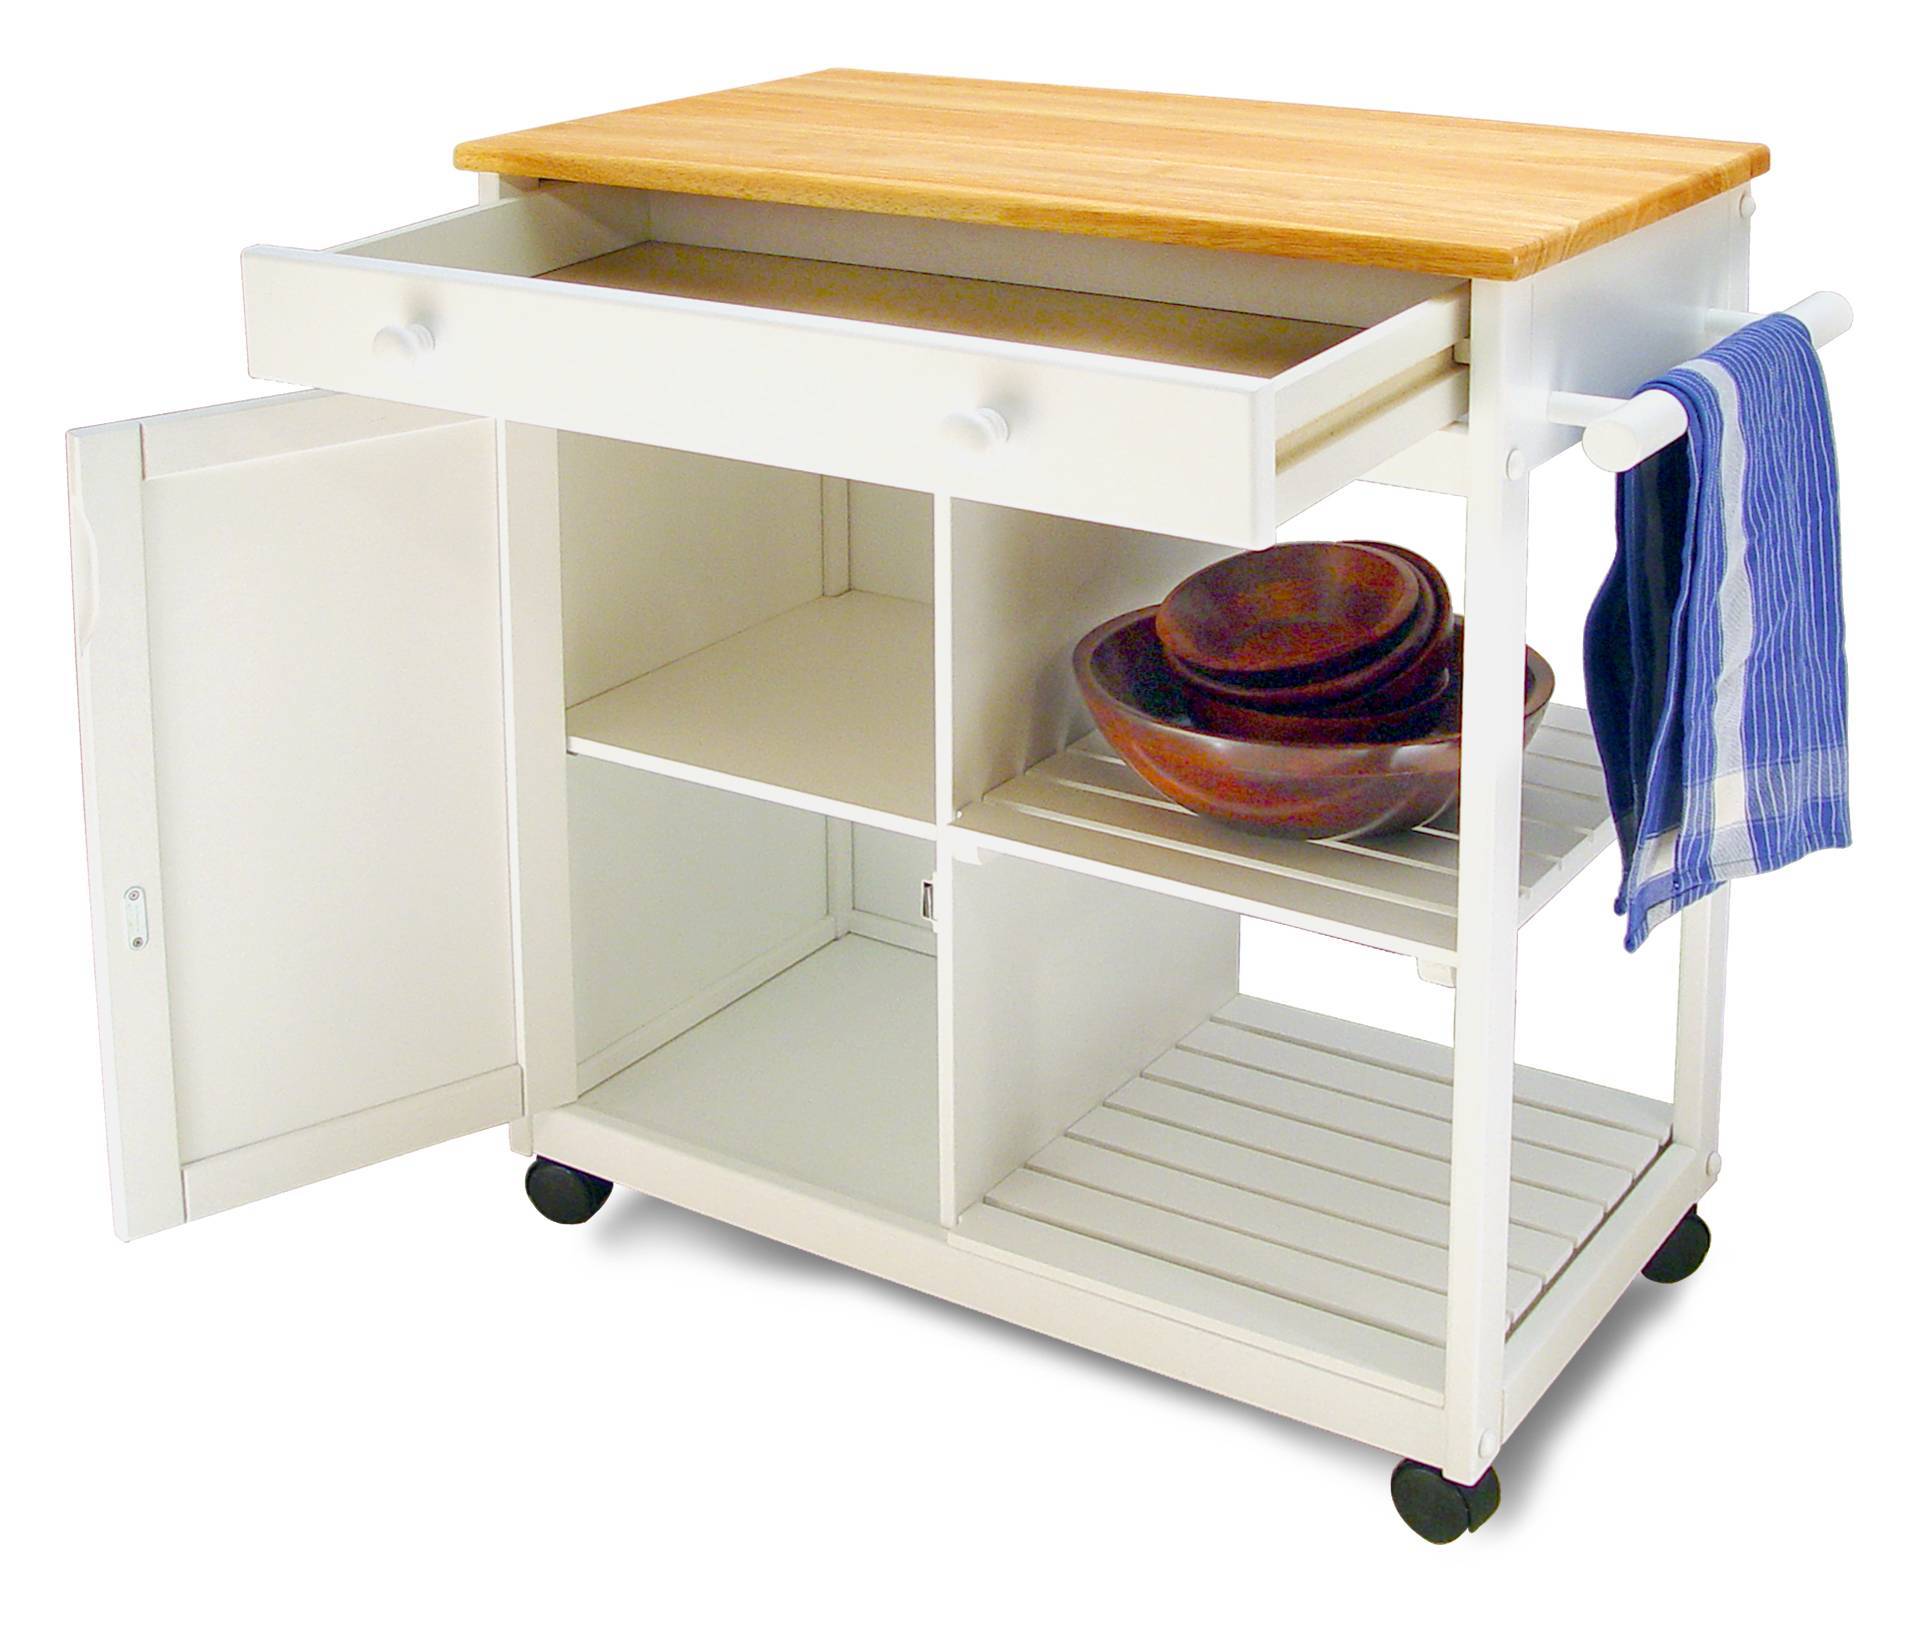 Обеденный стол с ящиками – практичный вариант для любой кухни